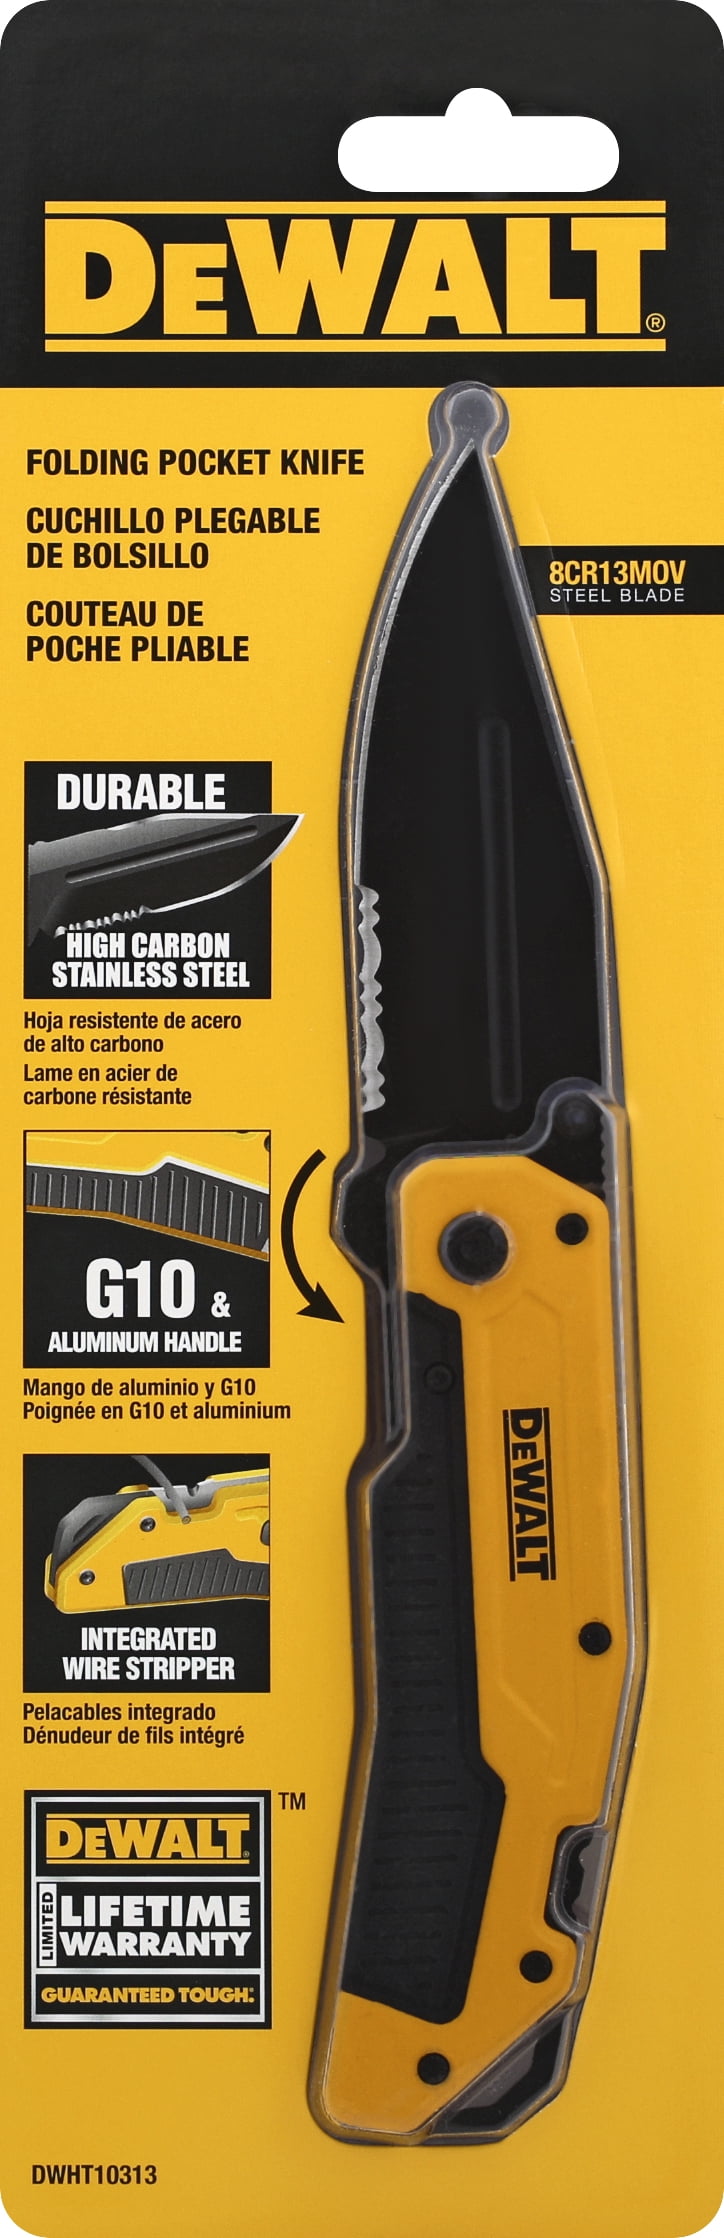 Svin forælder distrikt DeWalt 1-Blade 4-3/4 In. Premium Folding Pocket Knife - Walmart.com